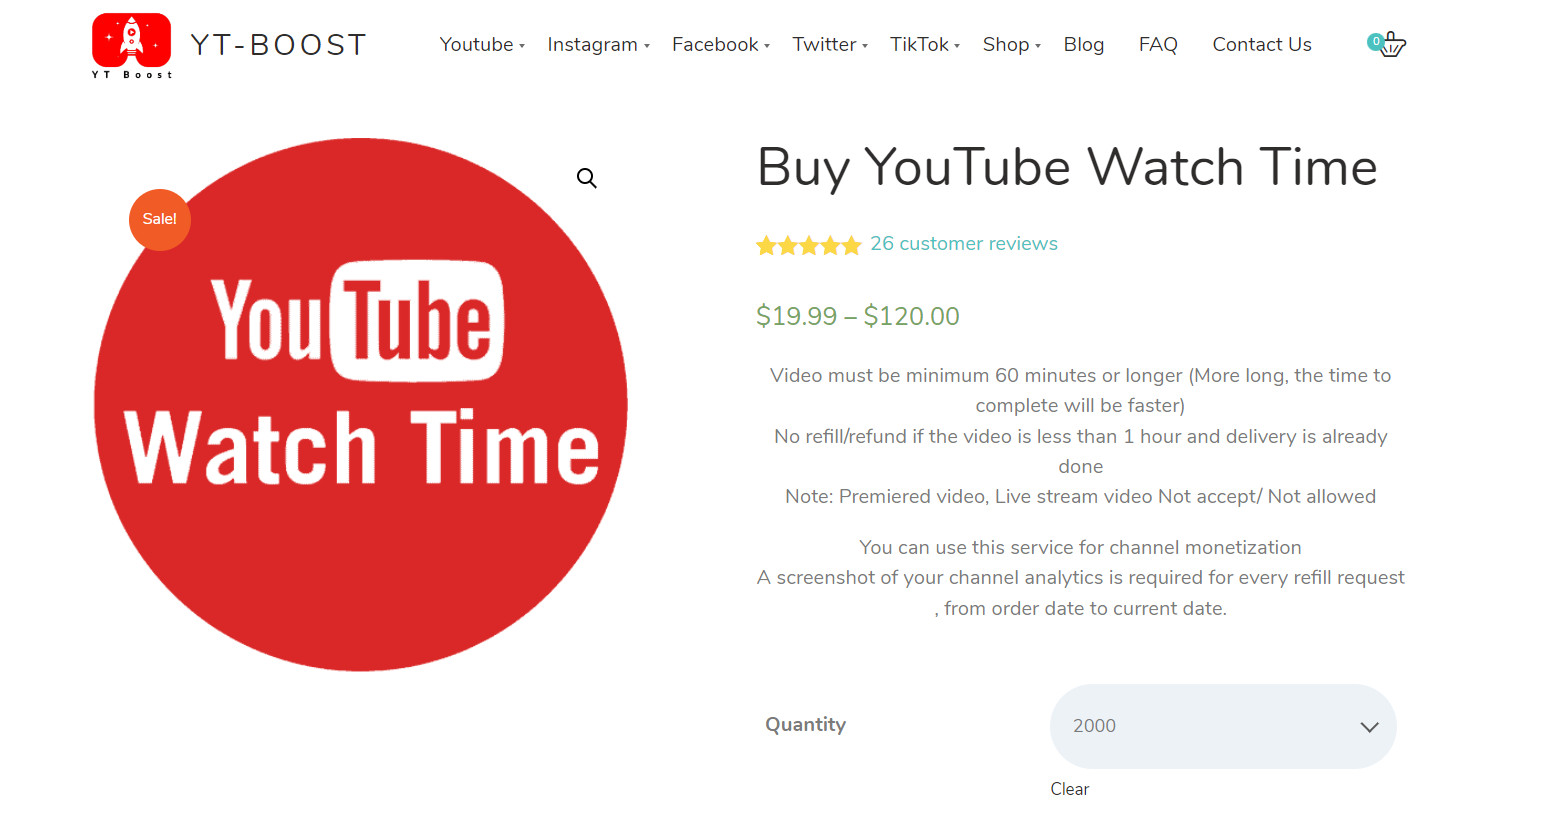 acheter du temps de visionnage d'une chaîne youtube